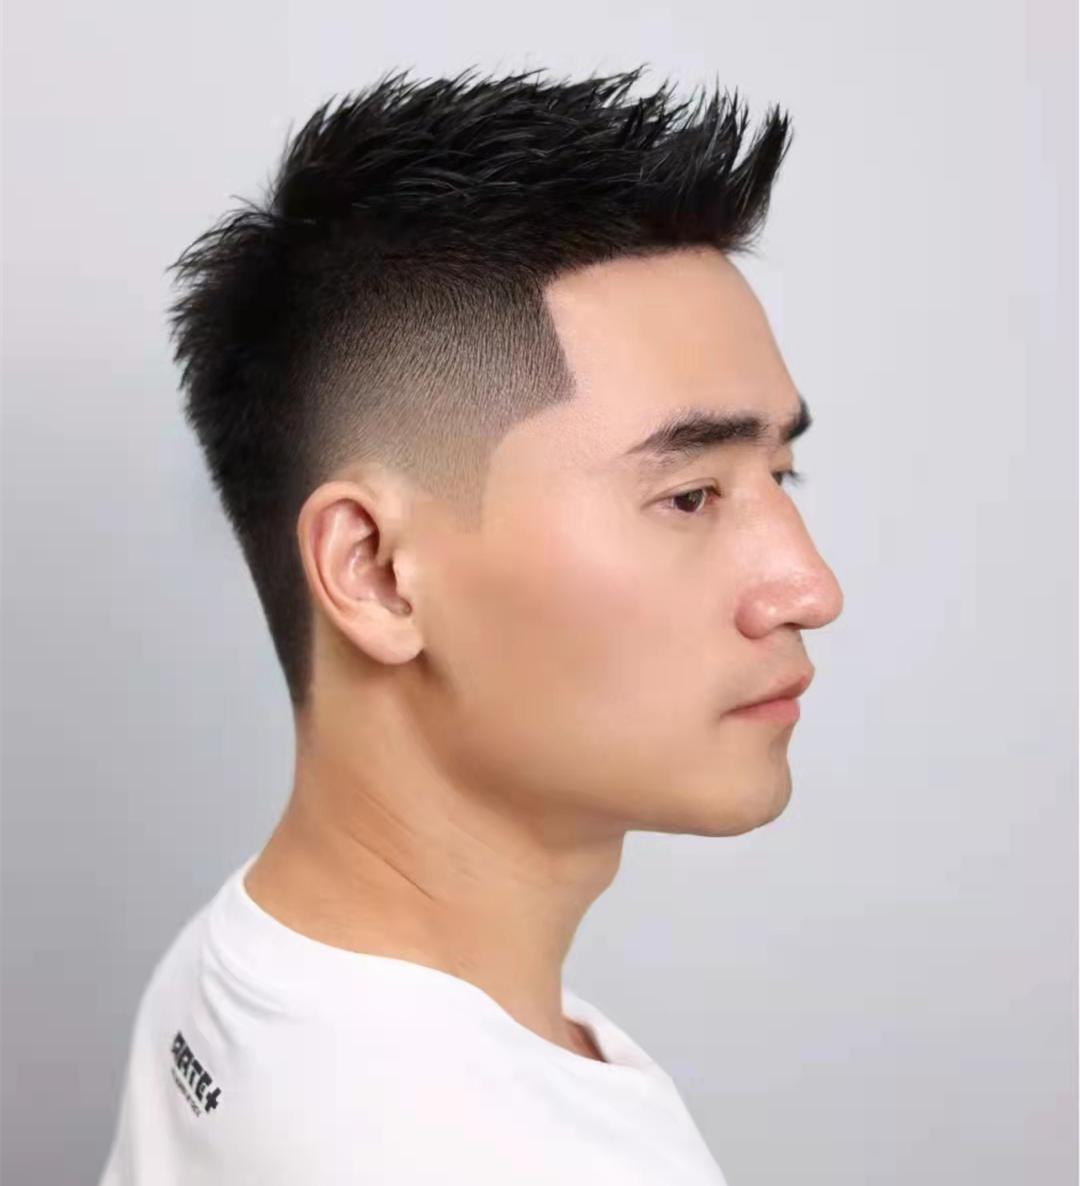 男士短发发型名称大全配图,2022年最流行的发型男士短发